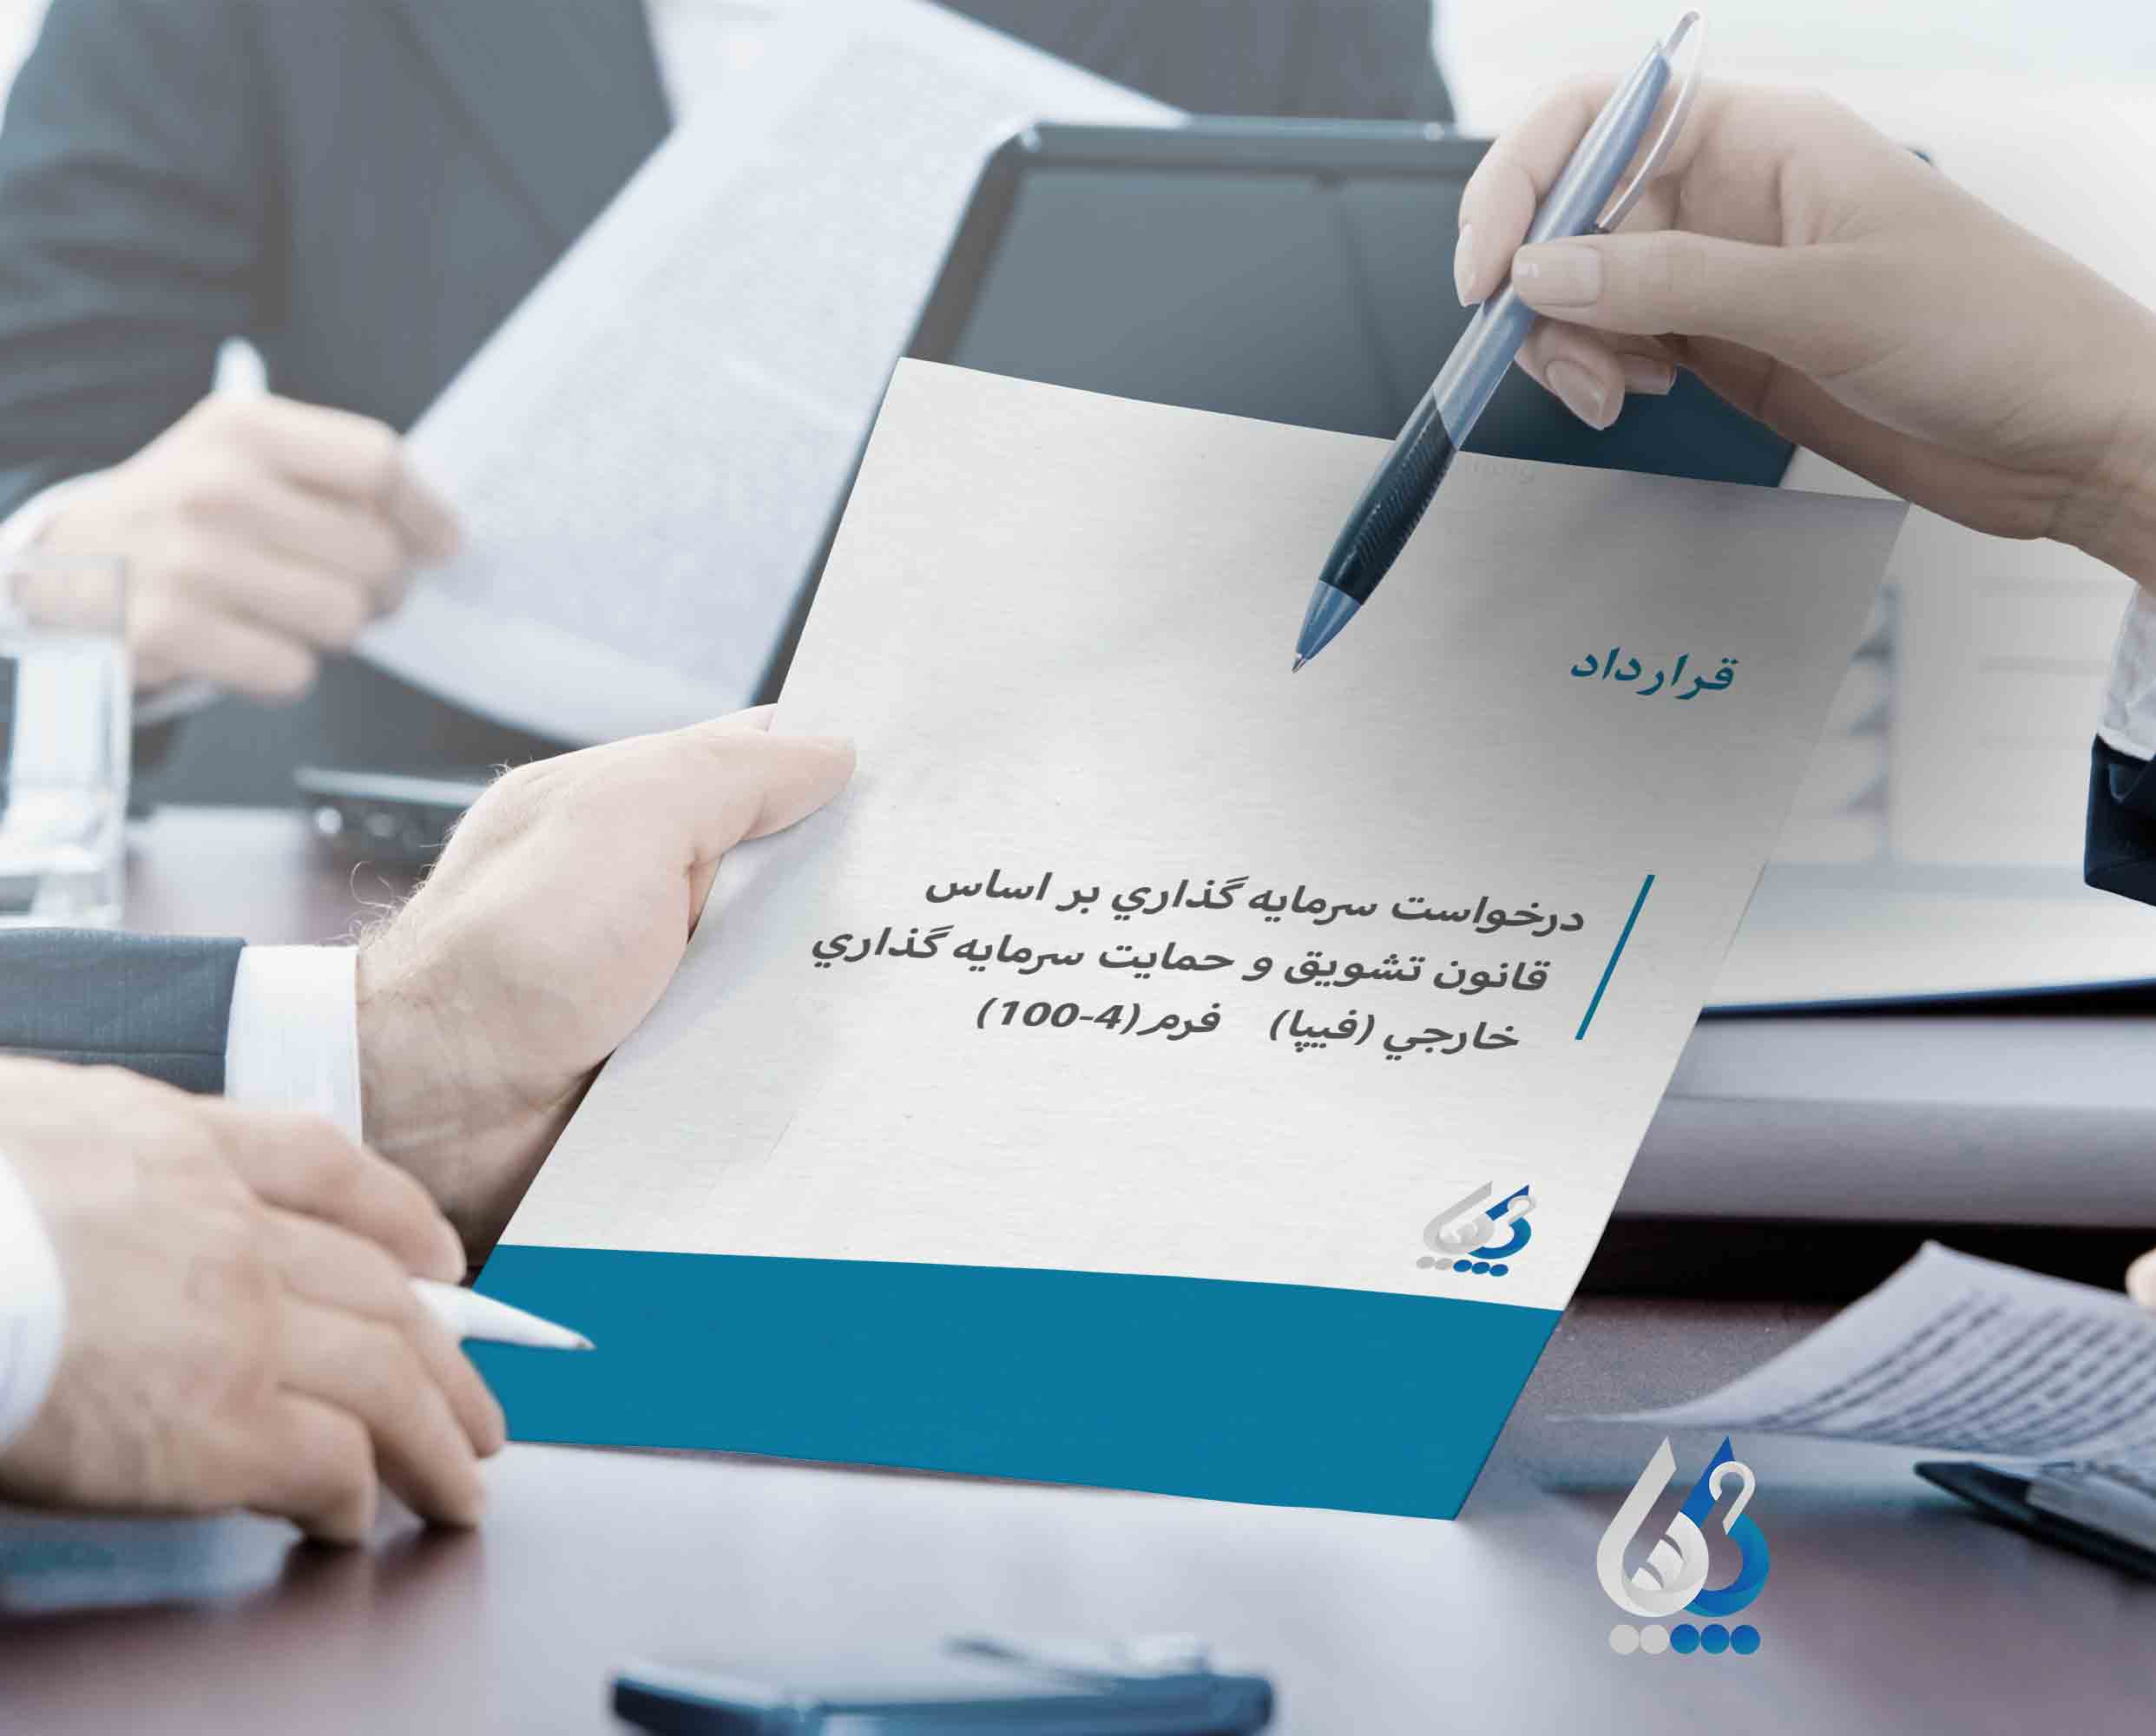 قرارداد درخواست سرمایه گذاری بر اساس قانون تشویق و حمایت سرمایه گذاری خارجی (فیپا) فرم (۴-۱۰۰)